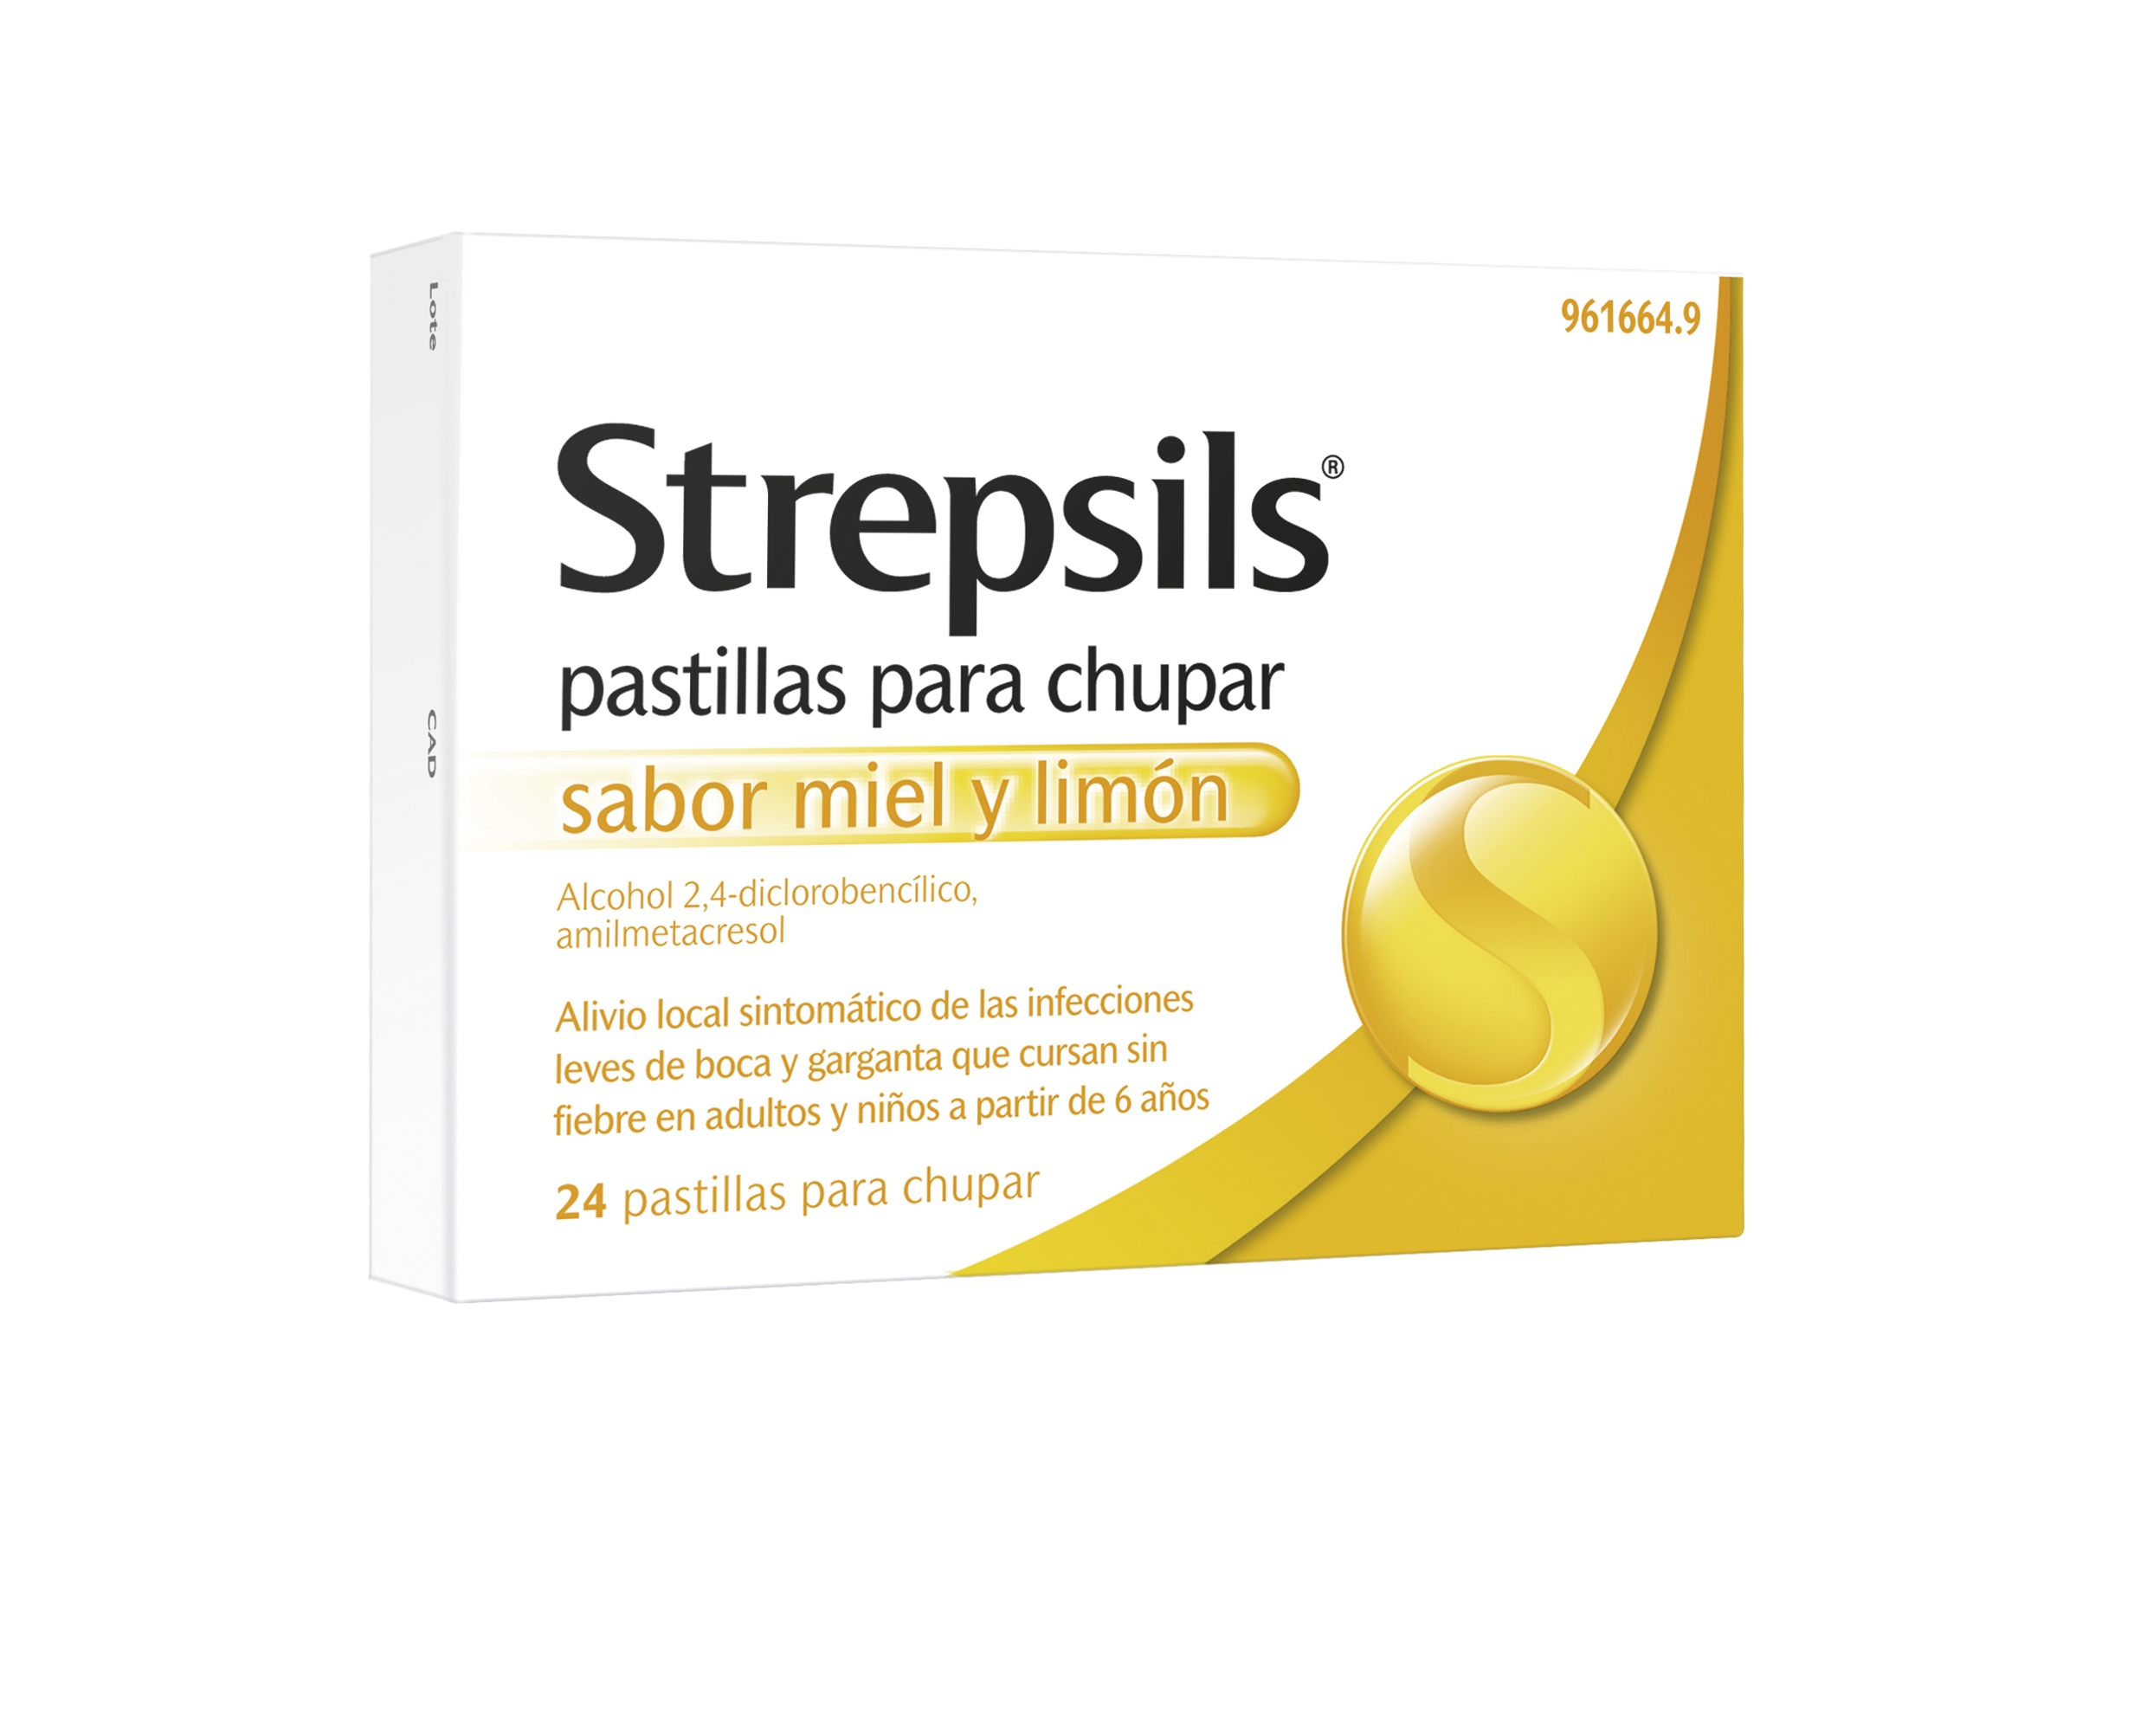 STREPSILS PASTILLAS PARA CHUPAR SABOR MIEL Y LIMÓN, 24 PASTILLAS